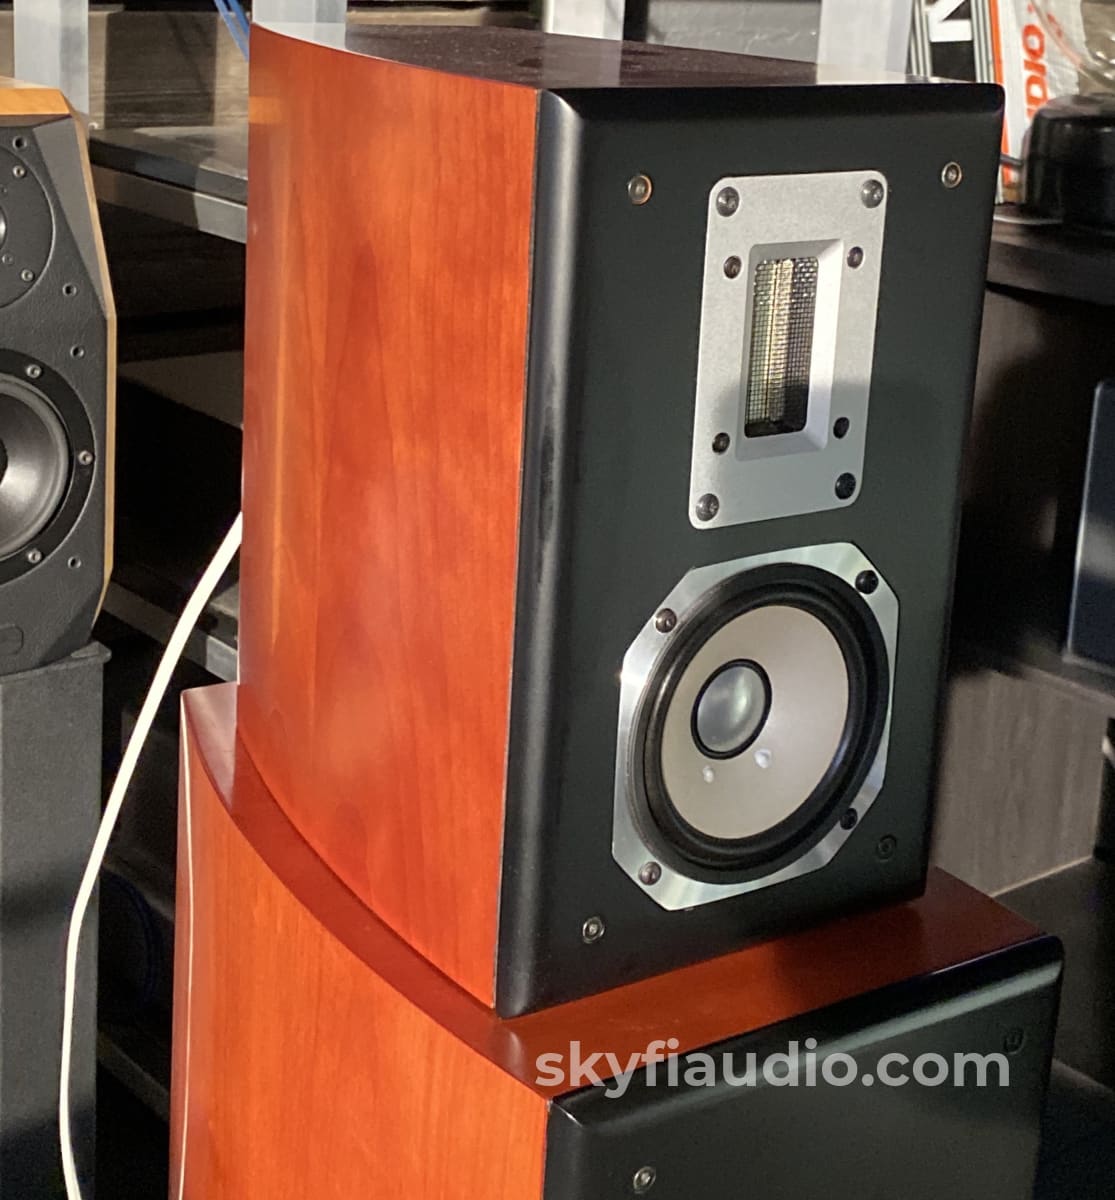 Von Schweikert Audio - Unifield Model Three Floorstanding Speakers